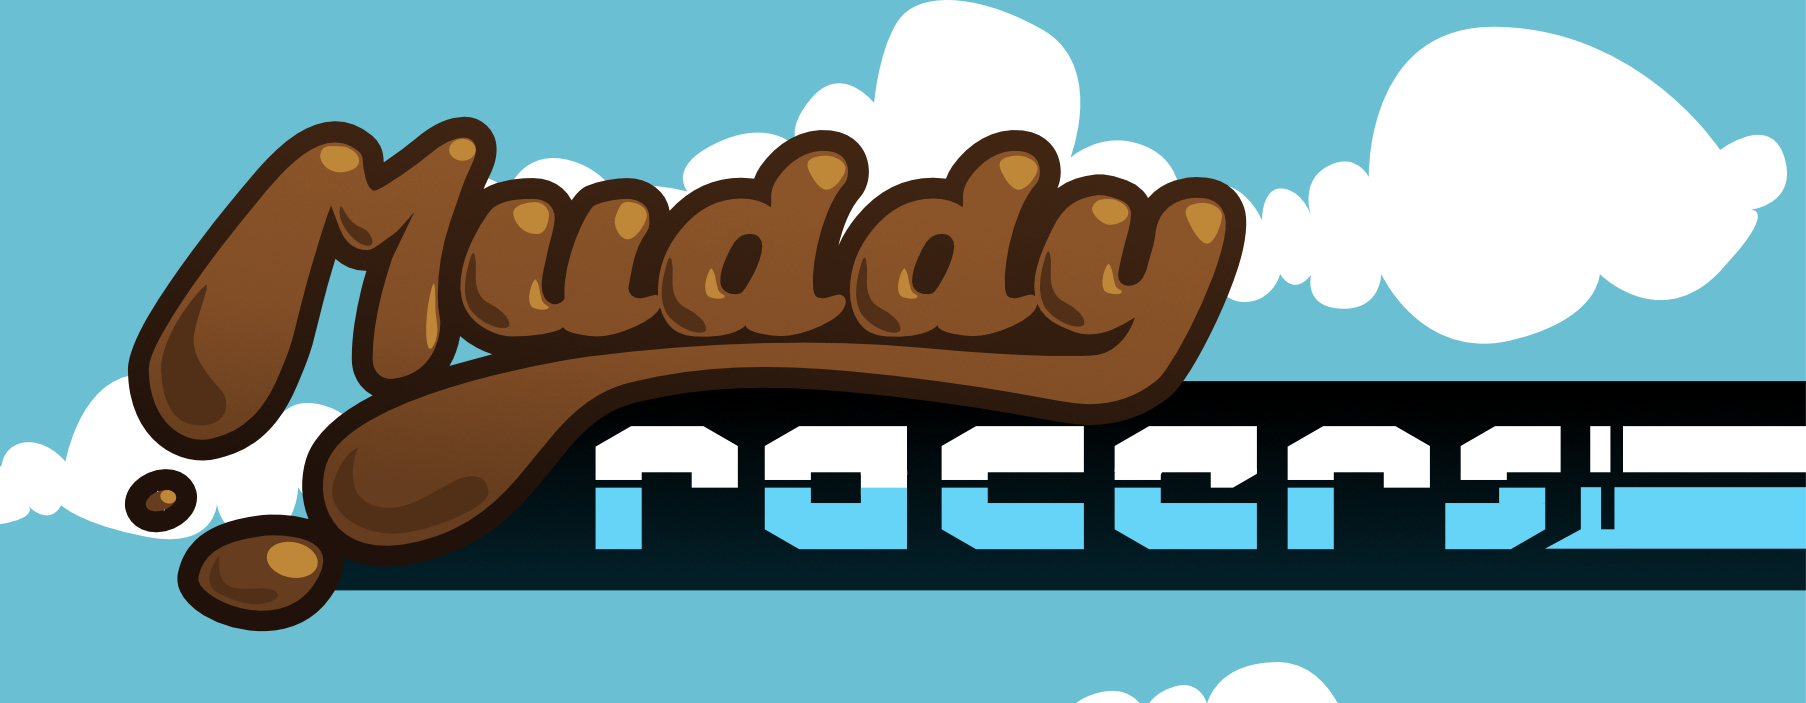 Muddy Racers (C64)